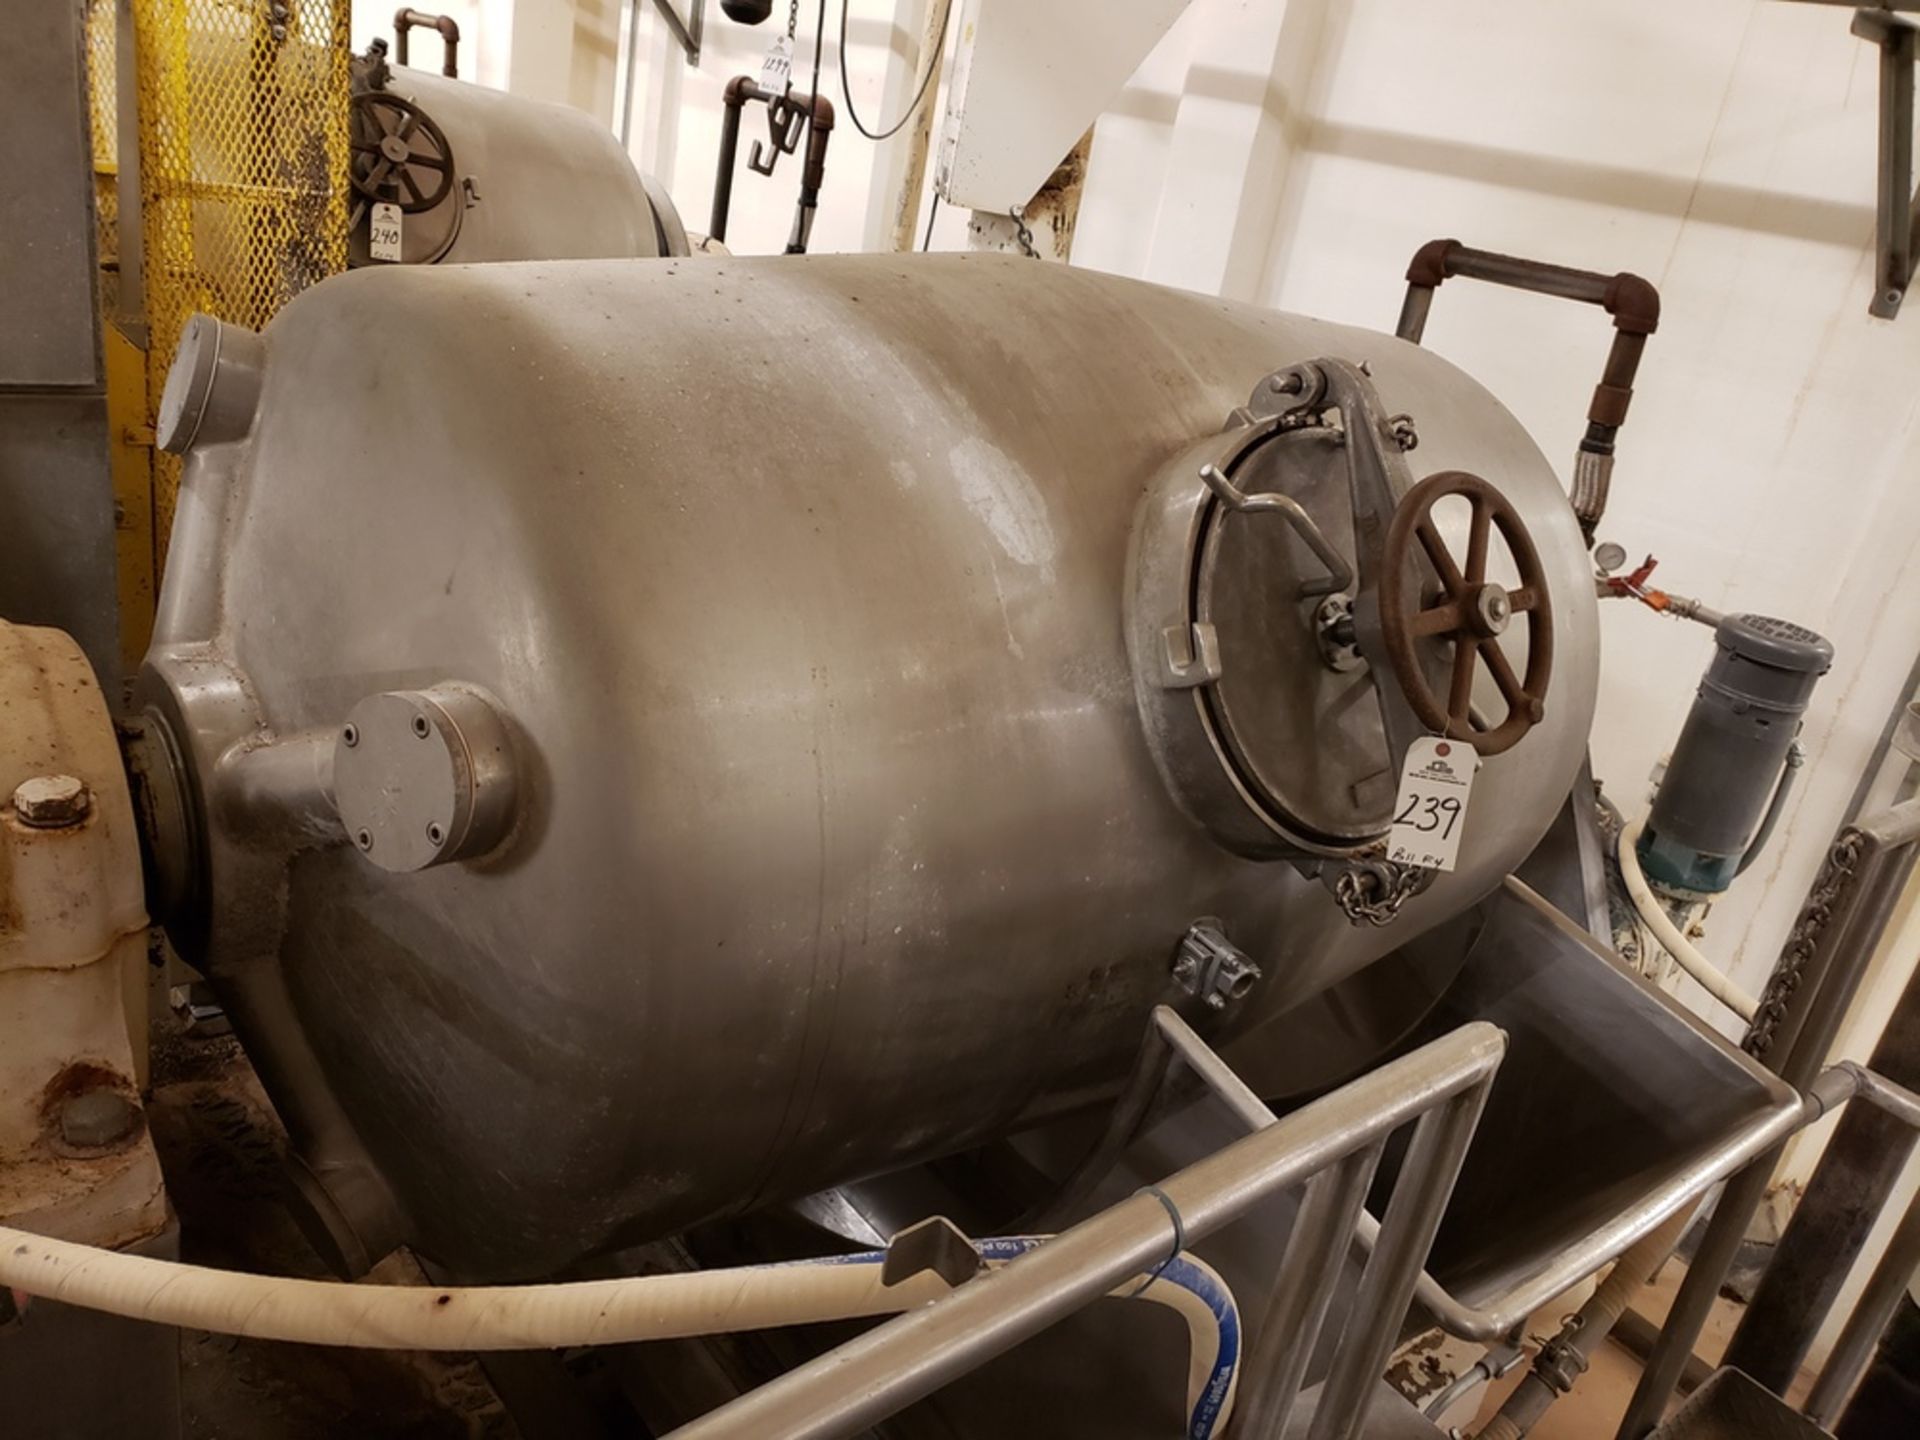 Hamilton 565 Gallon Rotary Steam Pressure Cooker | Rig Fee: $2100